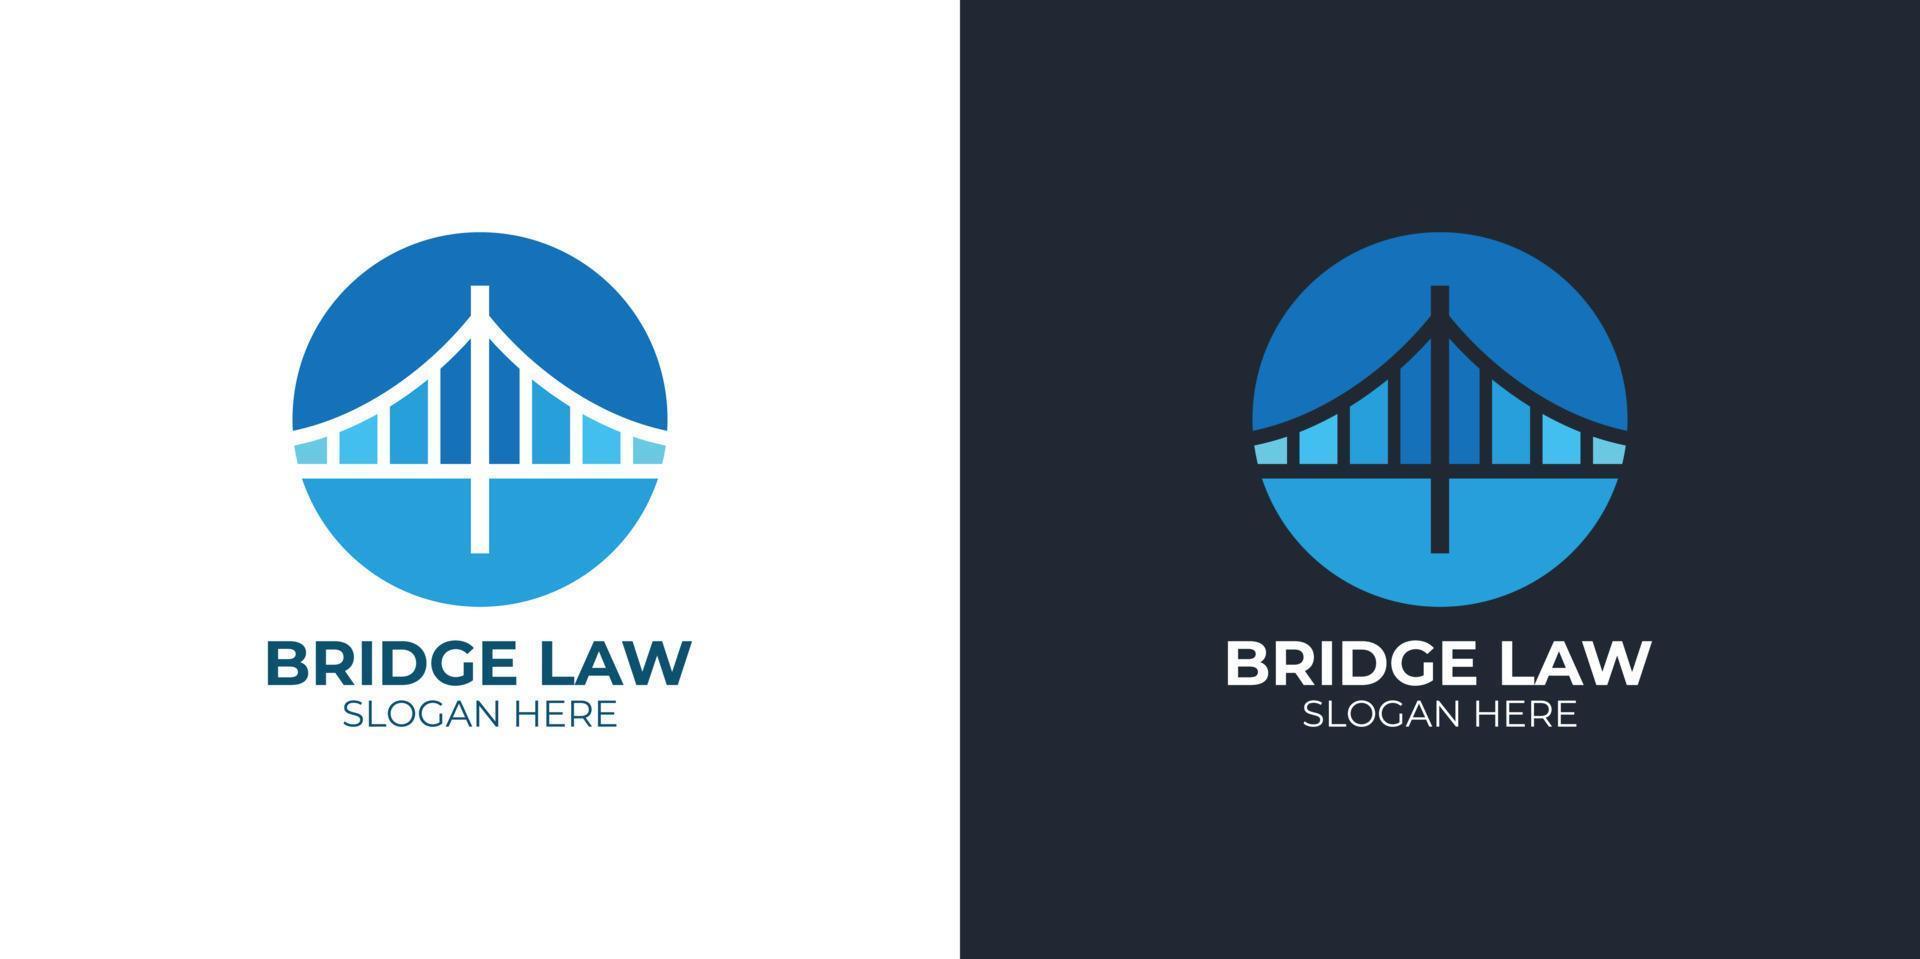 ensemble de logos de droit de pont élégant et minimaliste vecteur